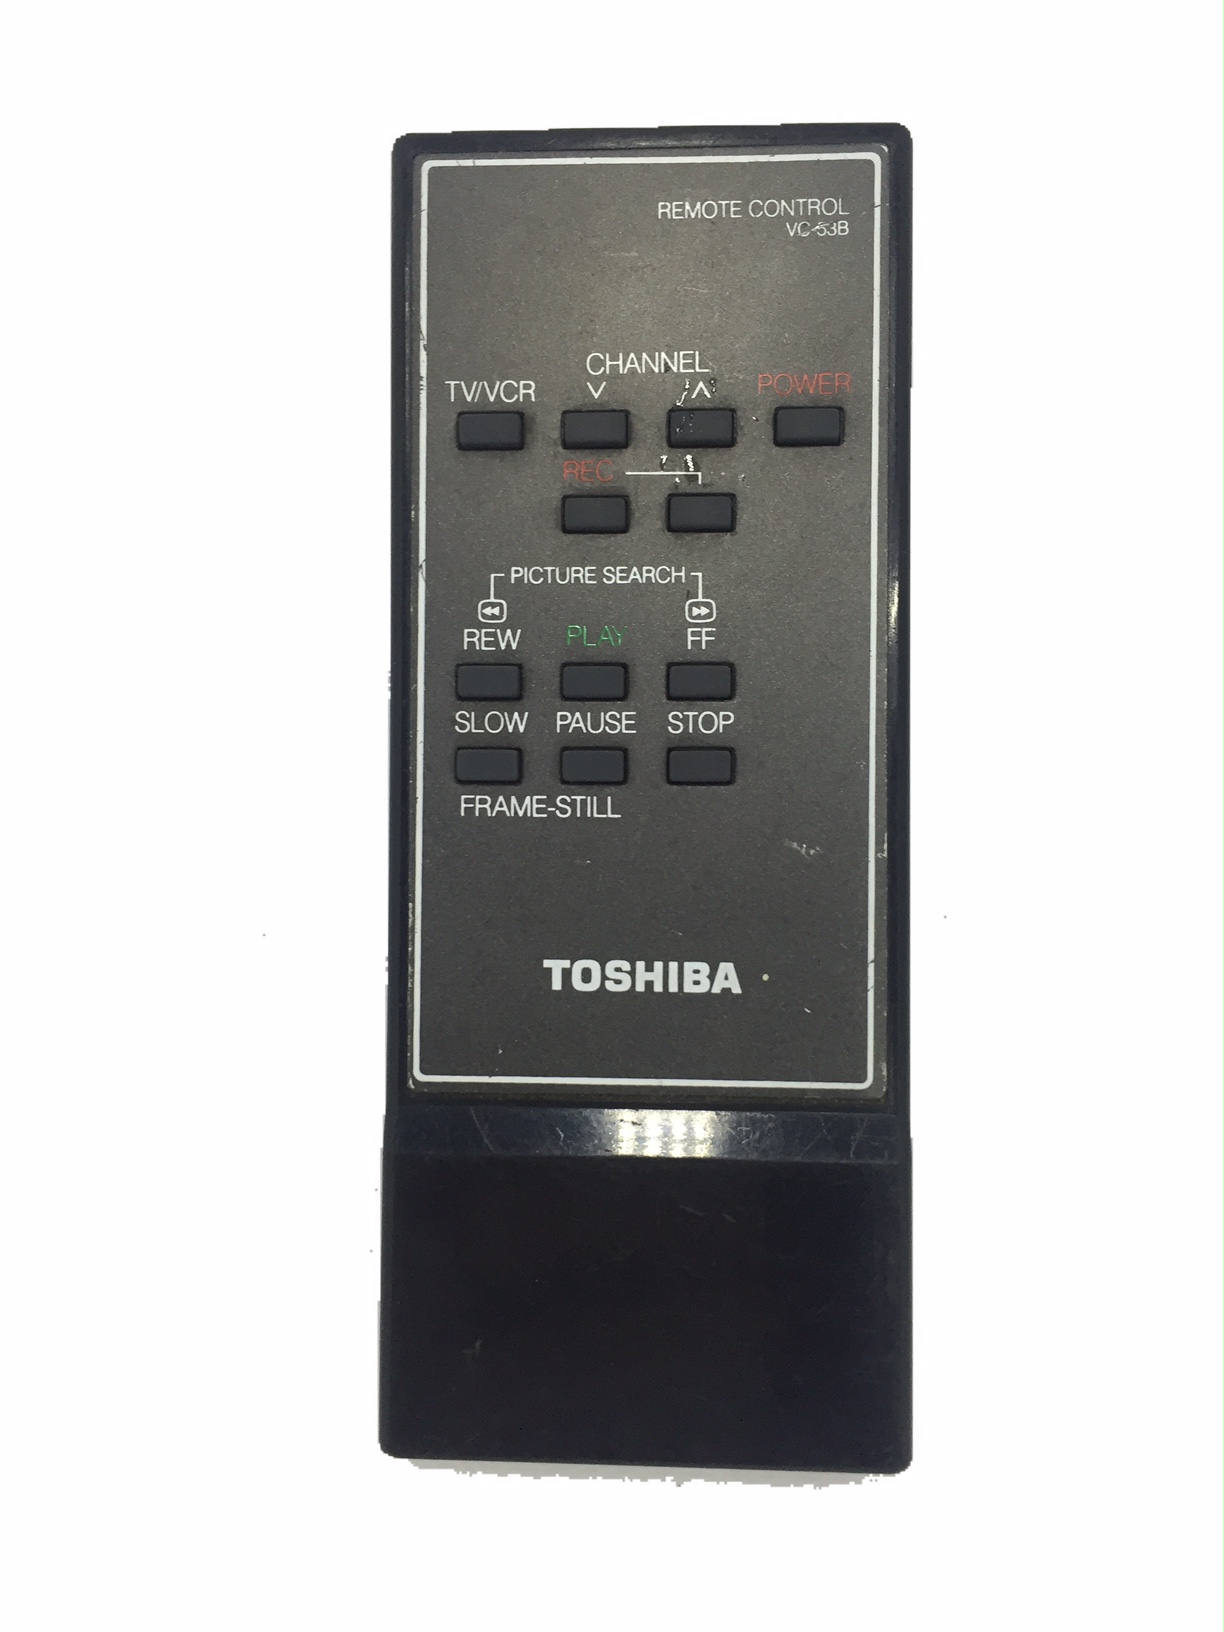 Controle remoto Toshiba Original